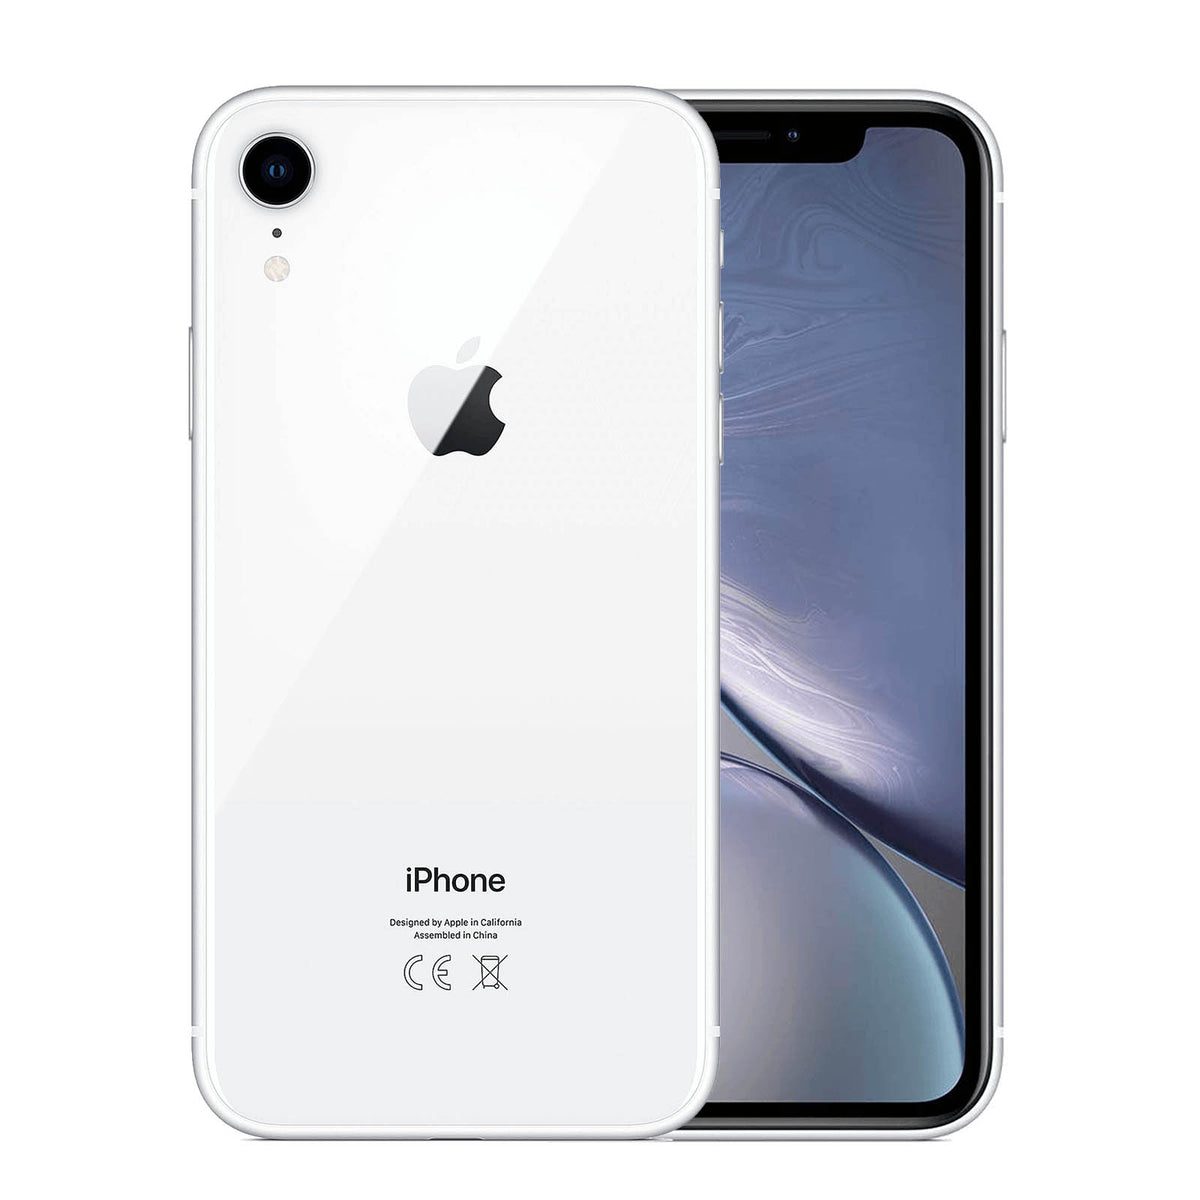 Apple iPhone XR GB   White – Loop Mobile   AU